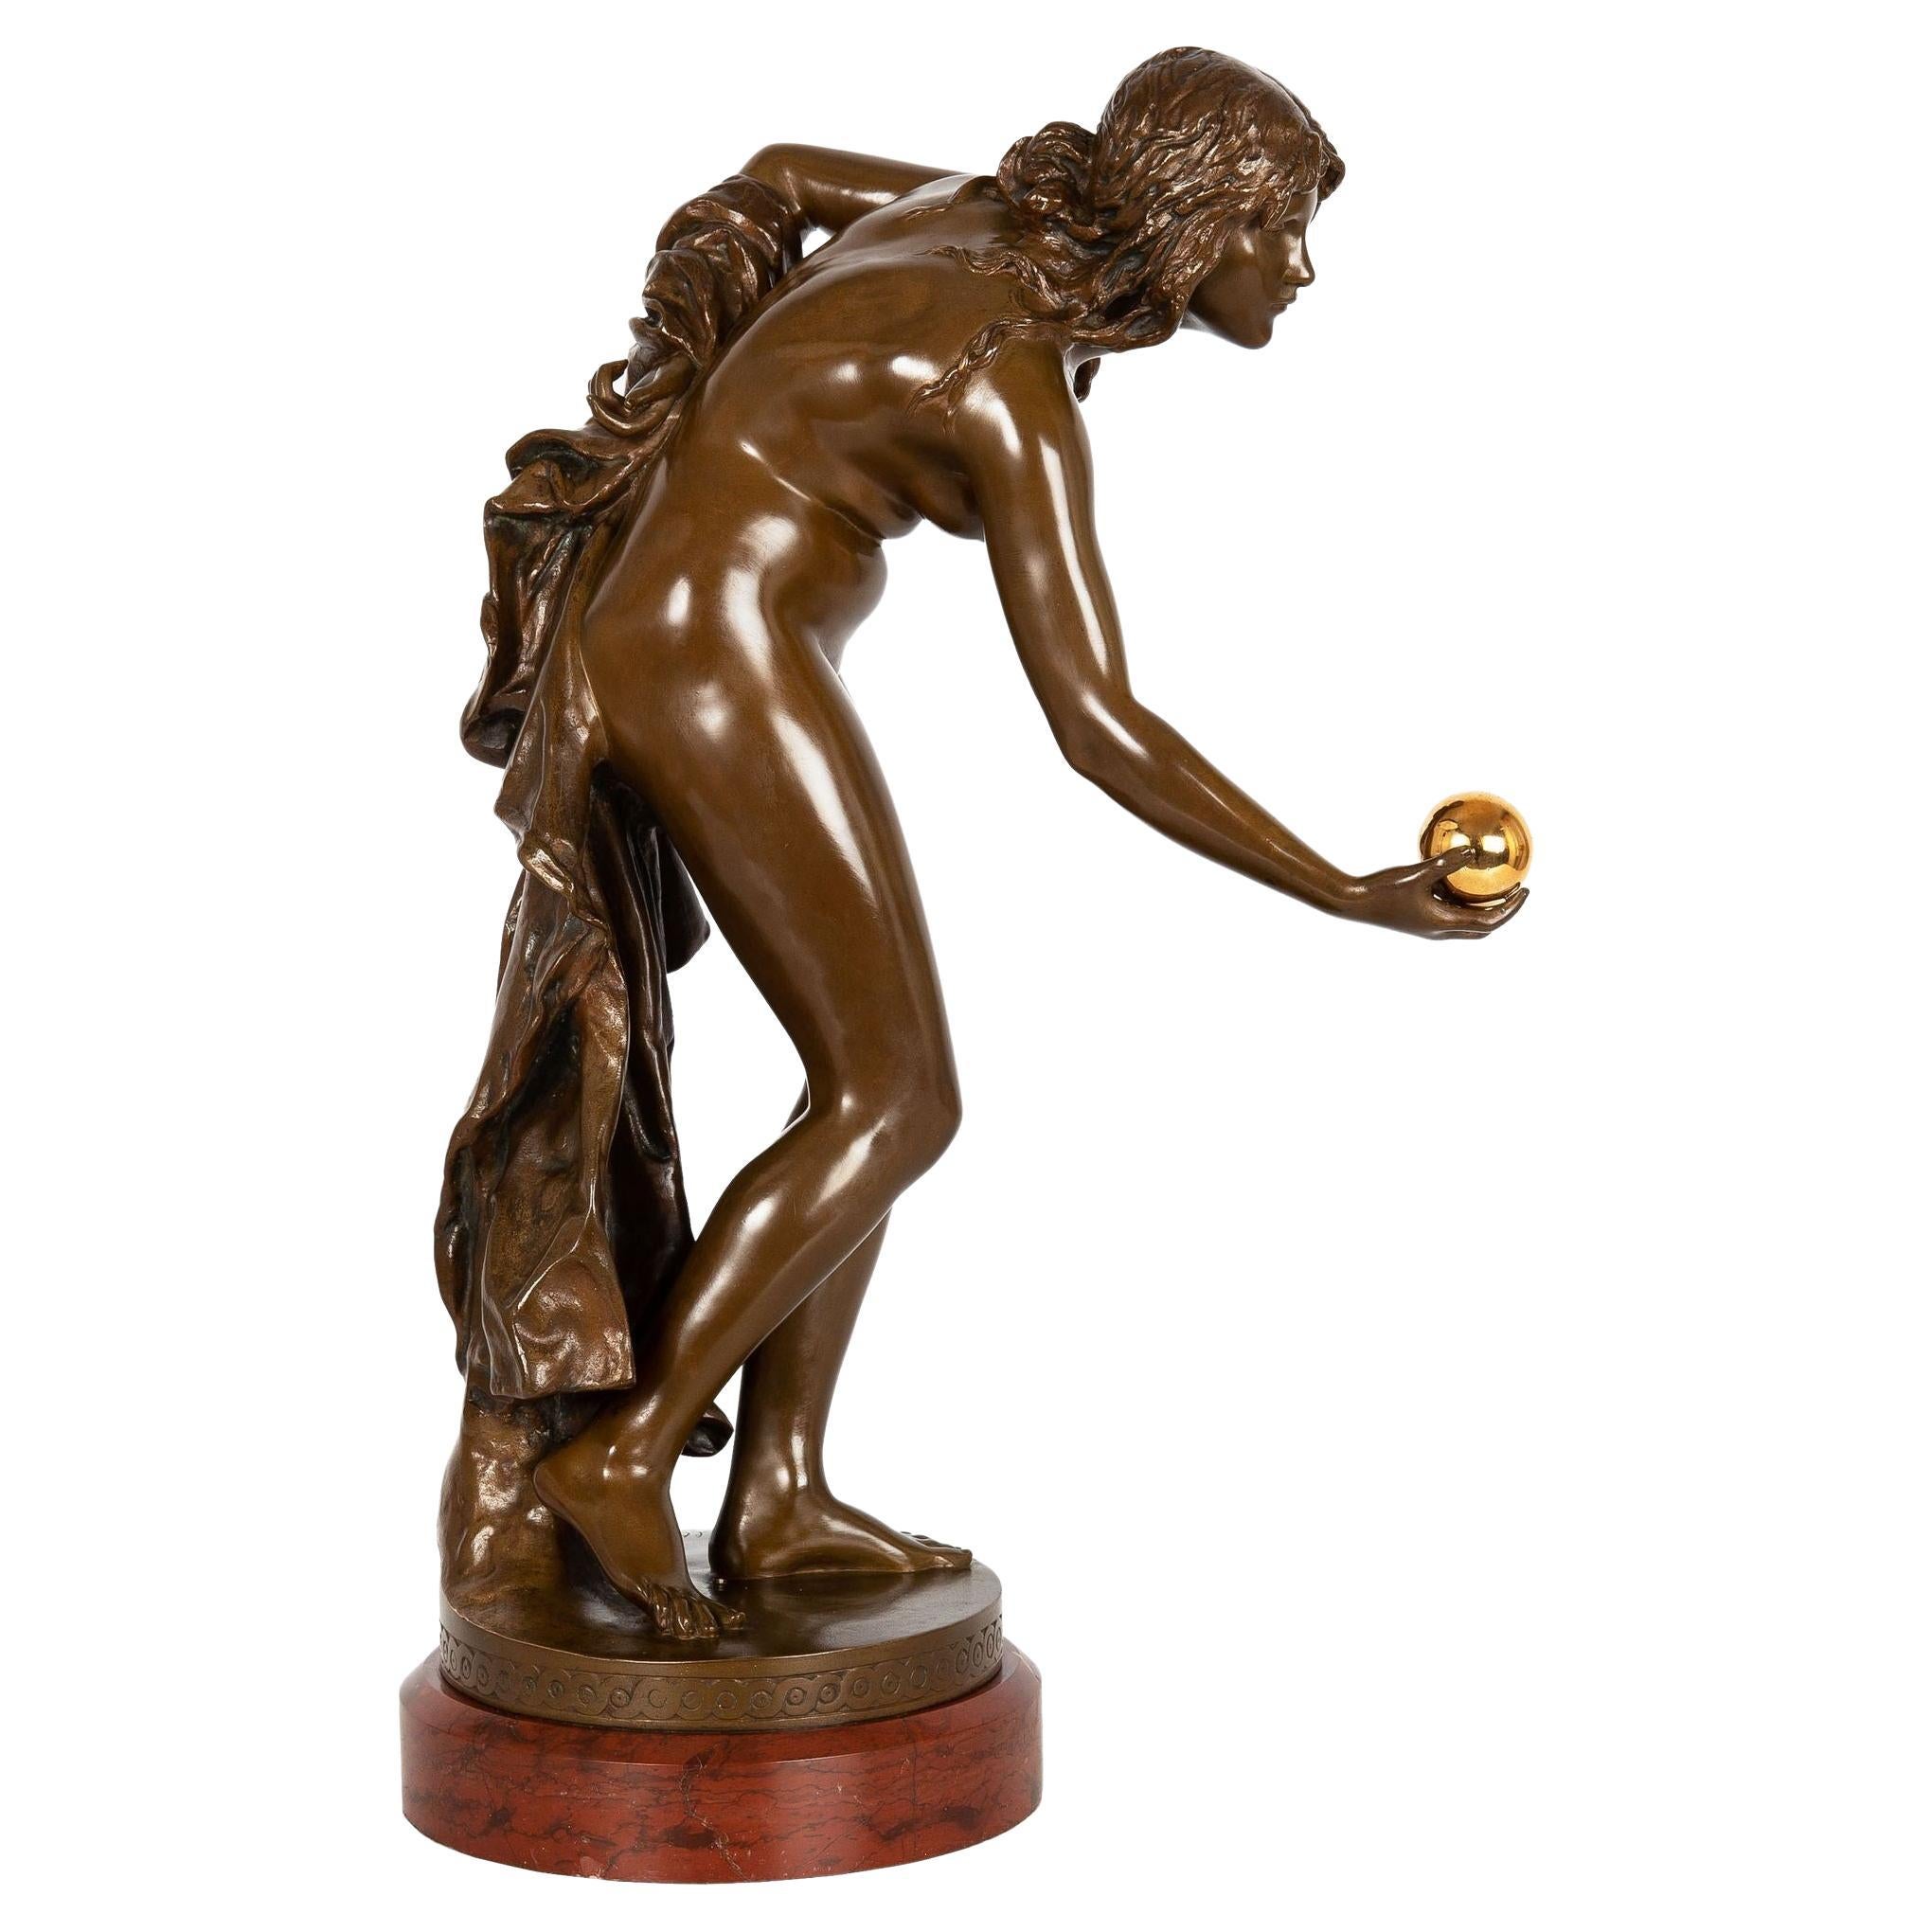 German Art Nouveau Bronze Sculpture “the Ball Player” by Walter Schott